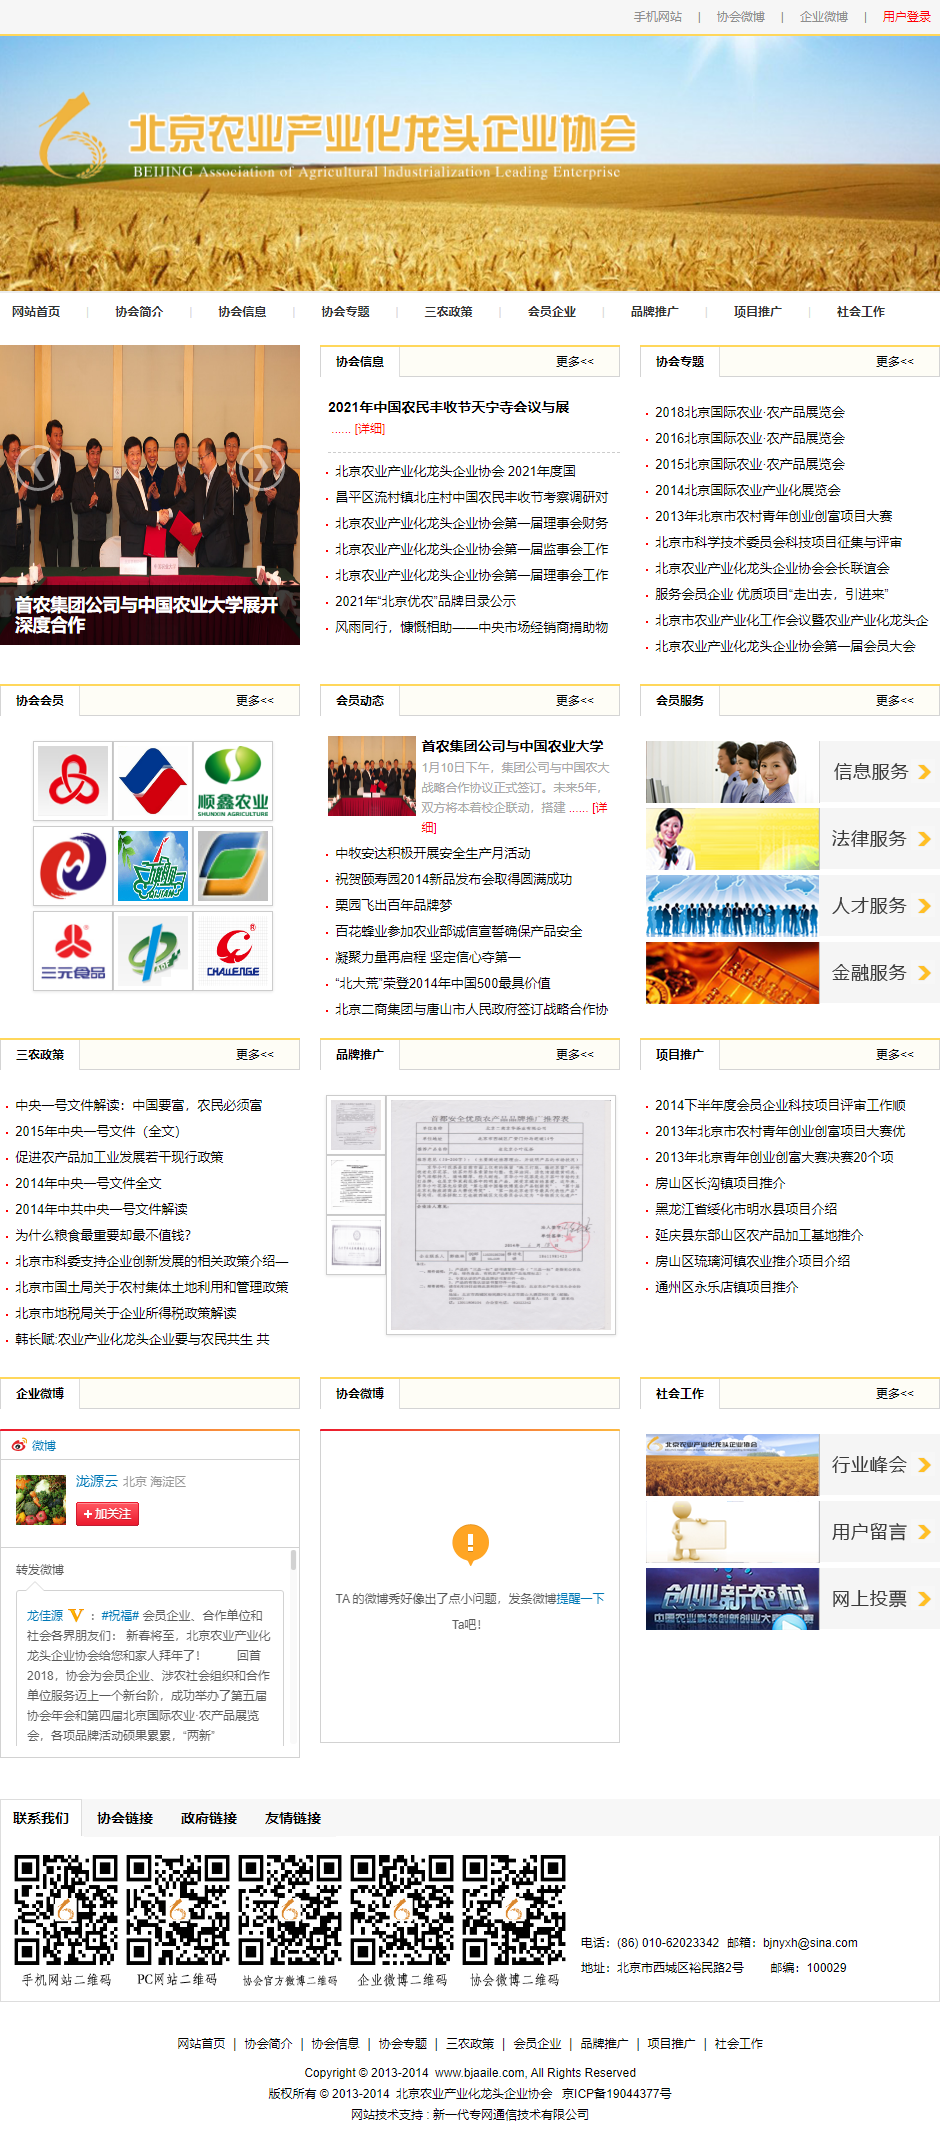 北京农业产业化龙头企业协会网站案例